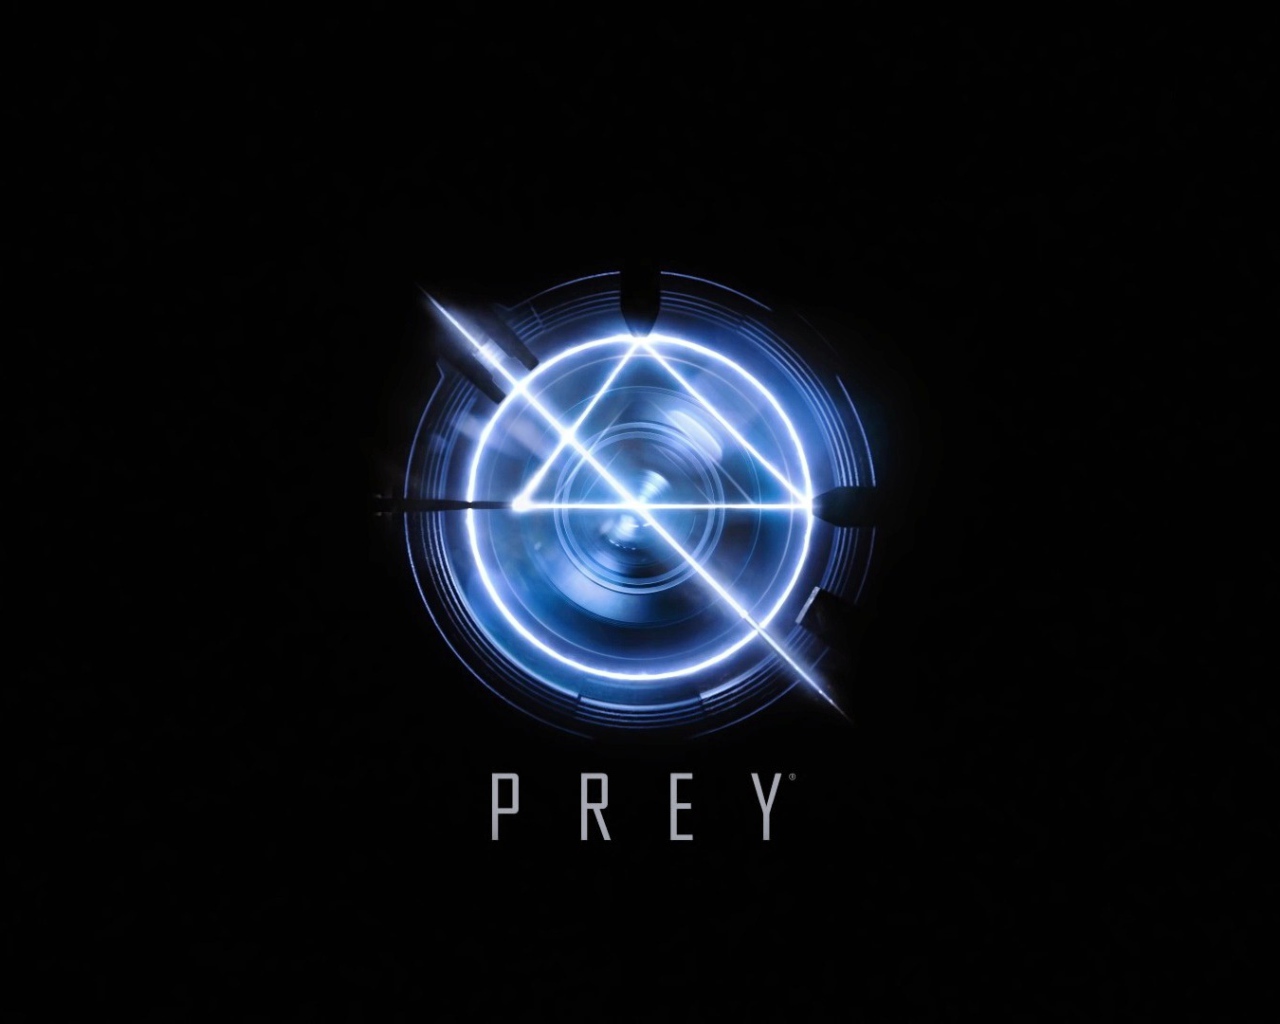 Логотип игры Prey 2017 на черном фоне